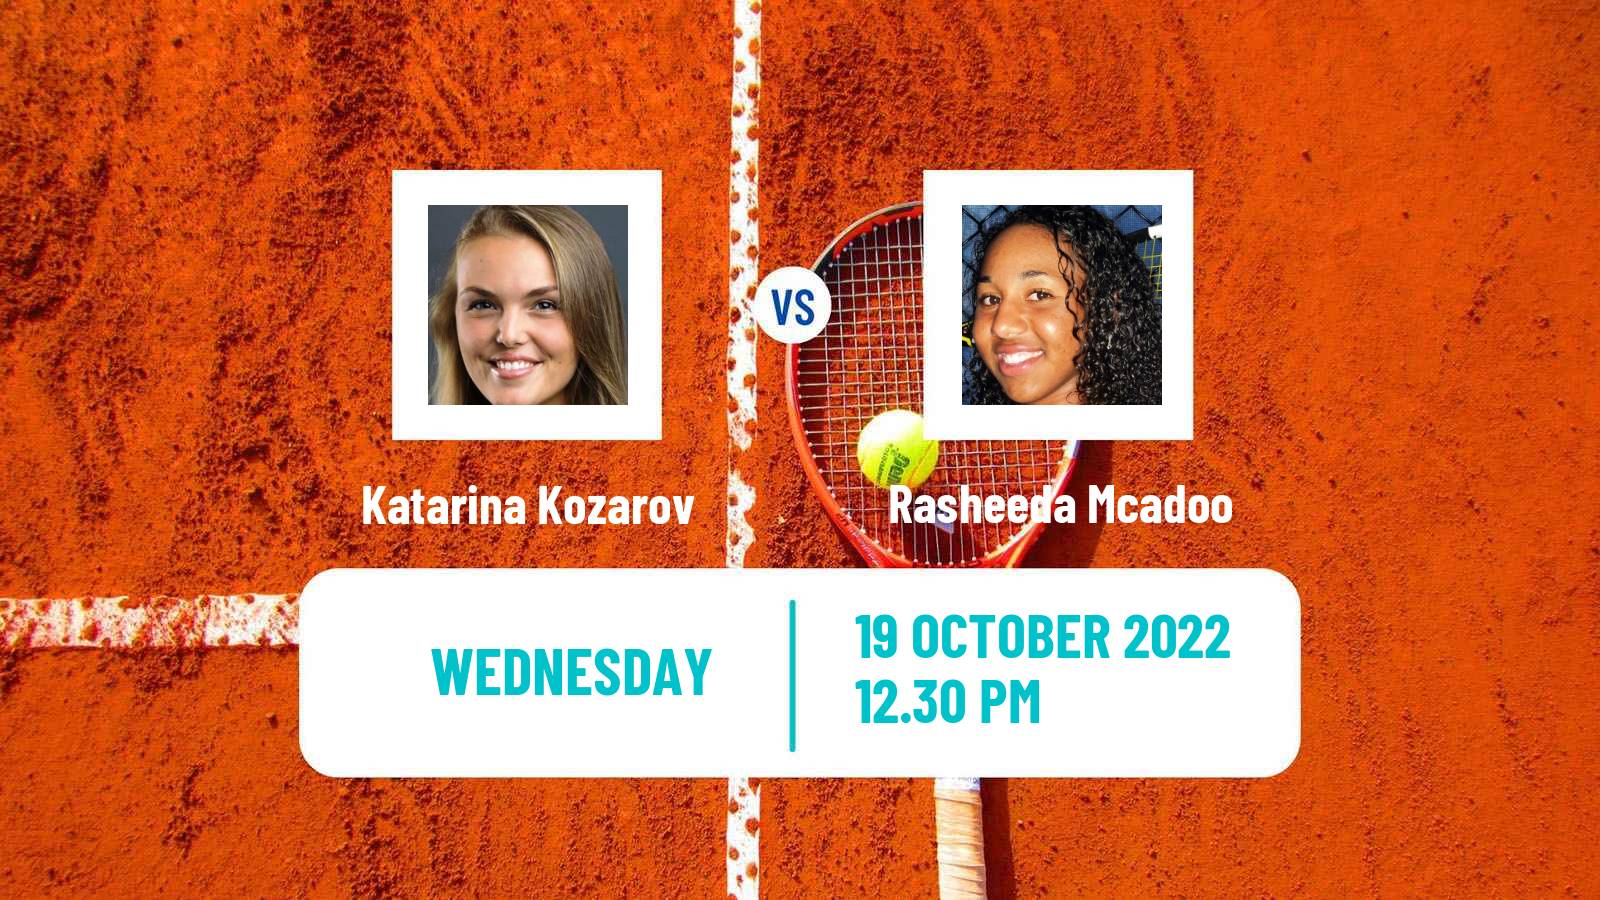 Tennis ITF Tournaments Katarina Kozarov - Rasheeda Mcadoo